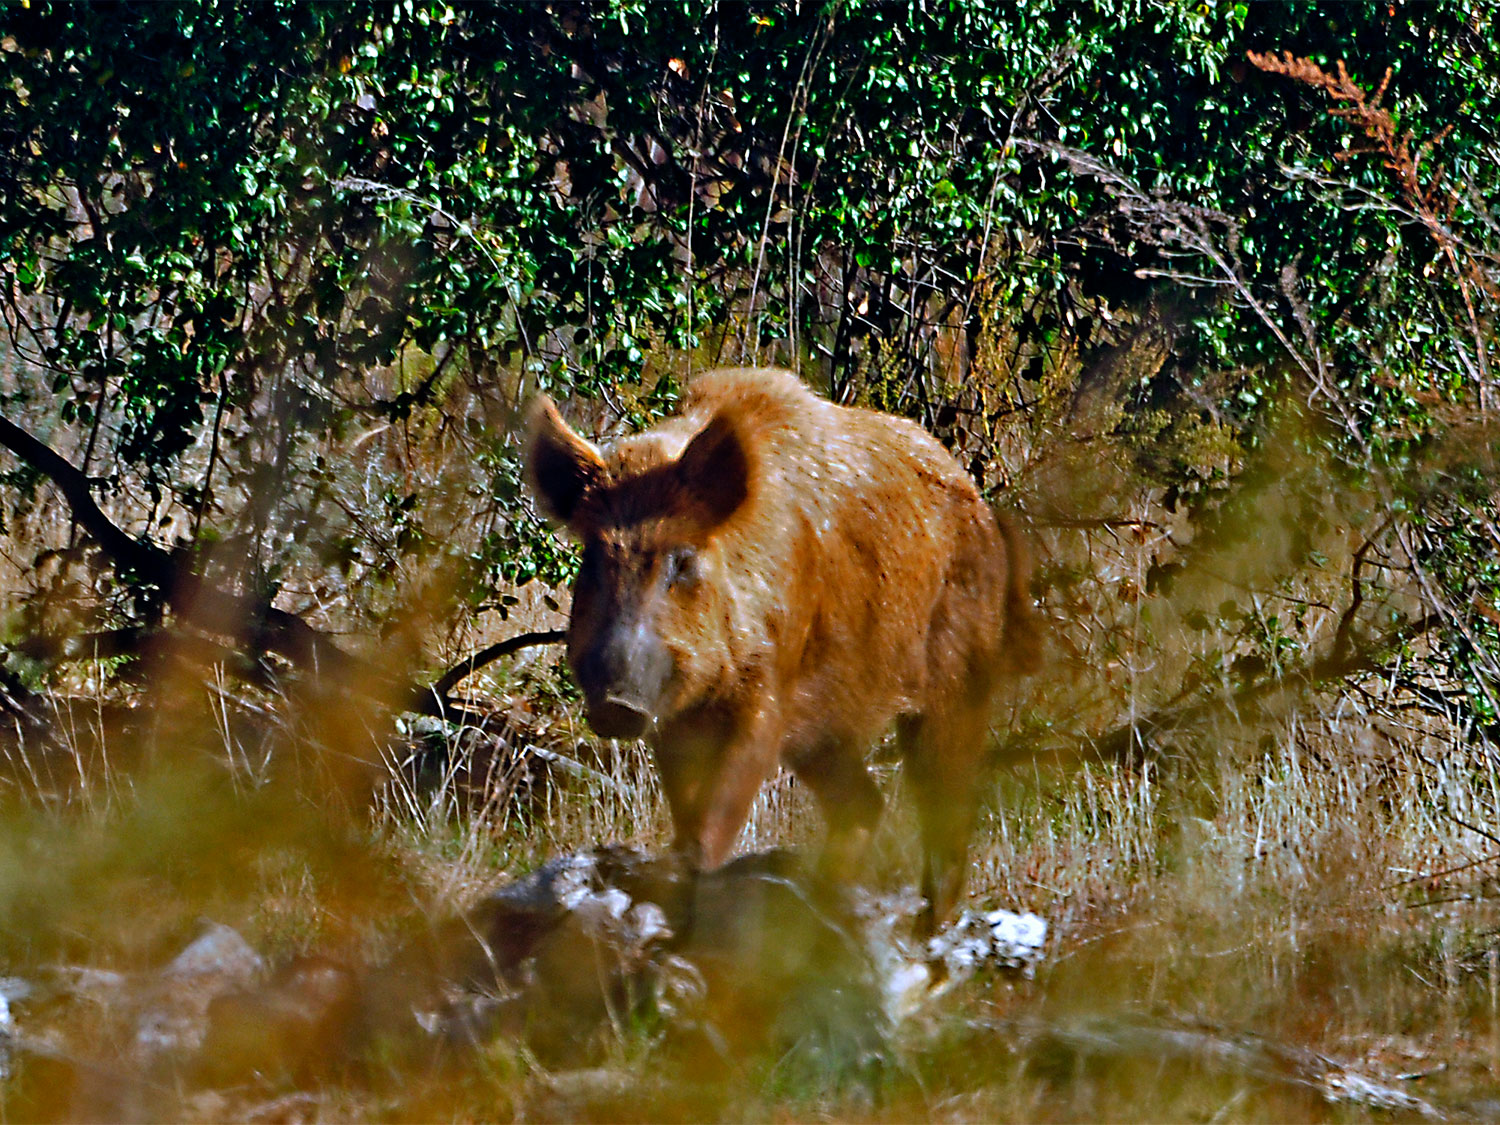 A brown hog walking through a field.